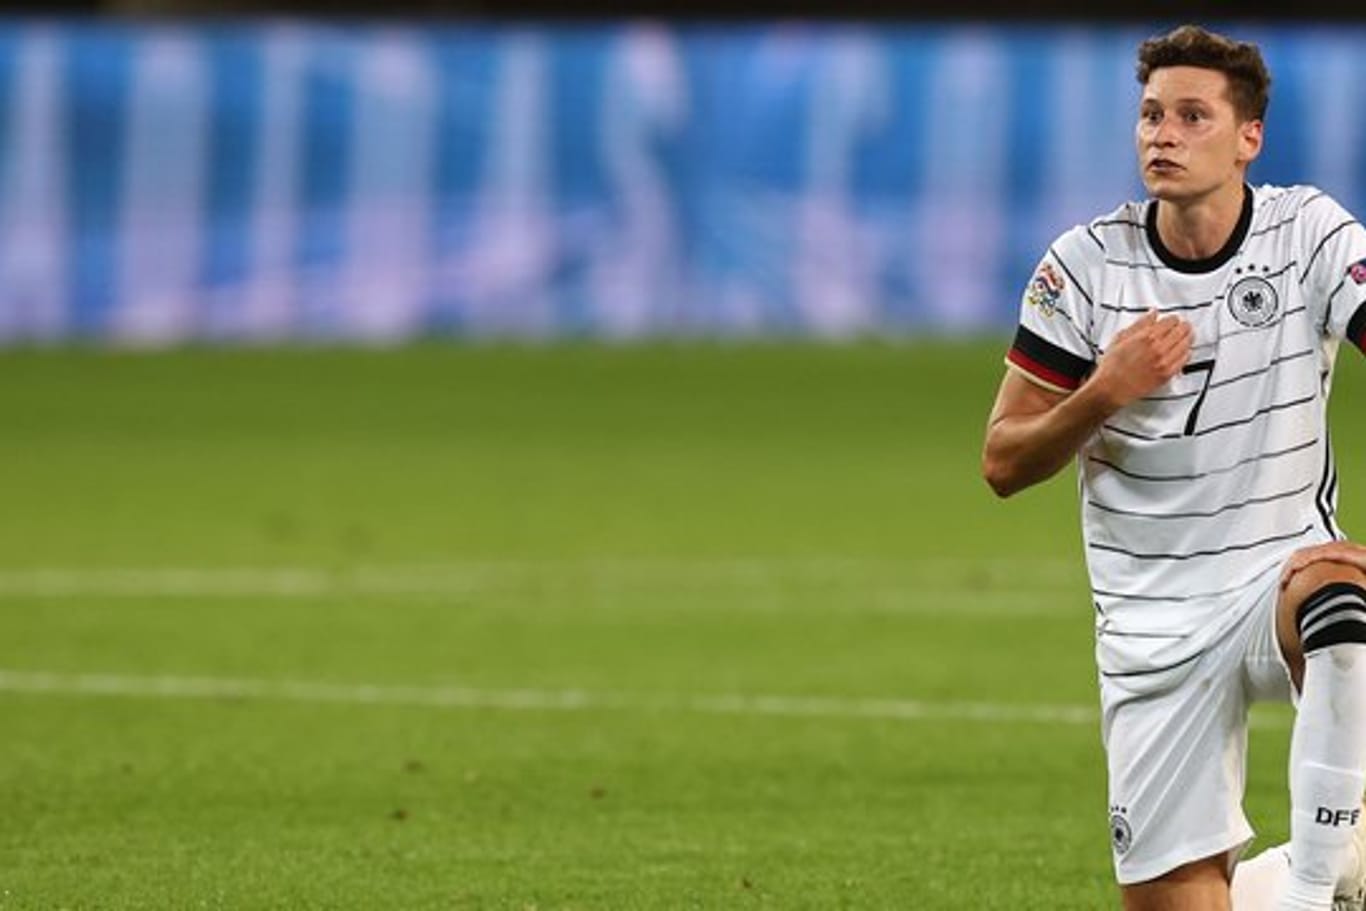 Bundestrainer Löw rät Julian Draxler zu einem Wechsel, sollte dieser bei PSG nicht mehr Einsatzzeiten bekommen.